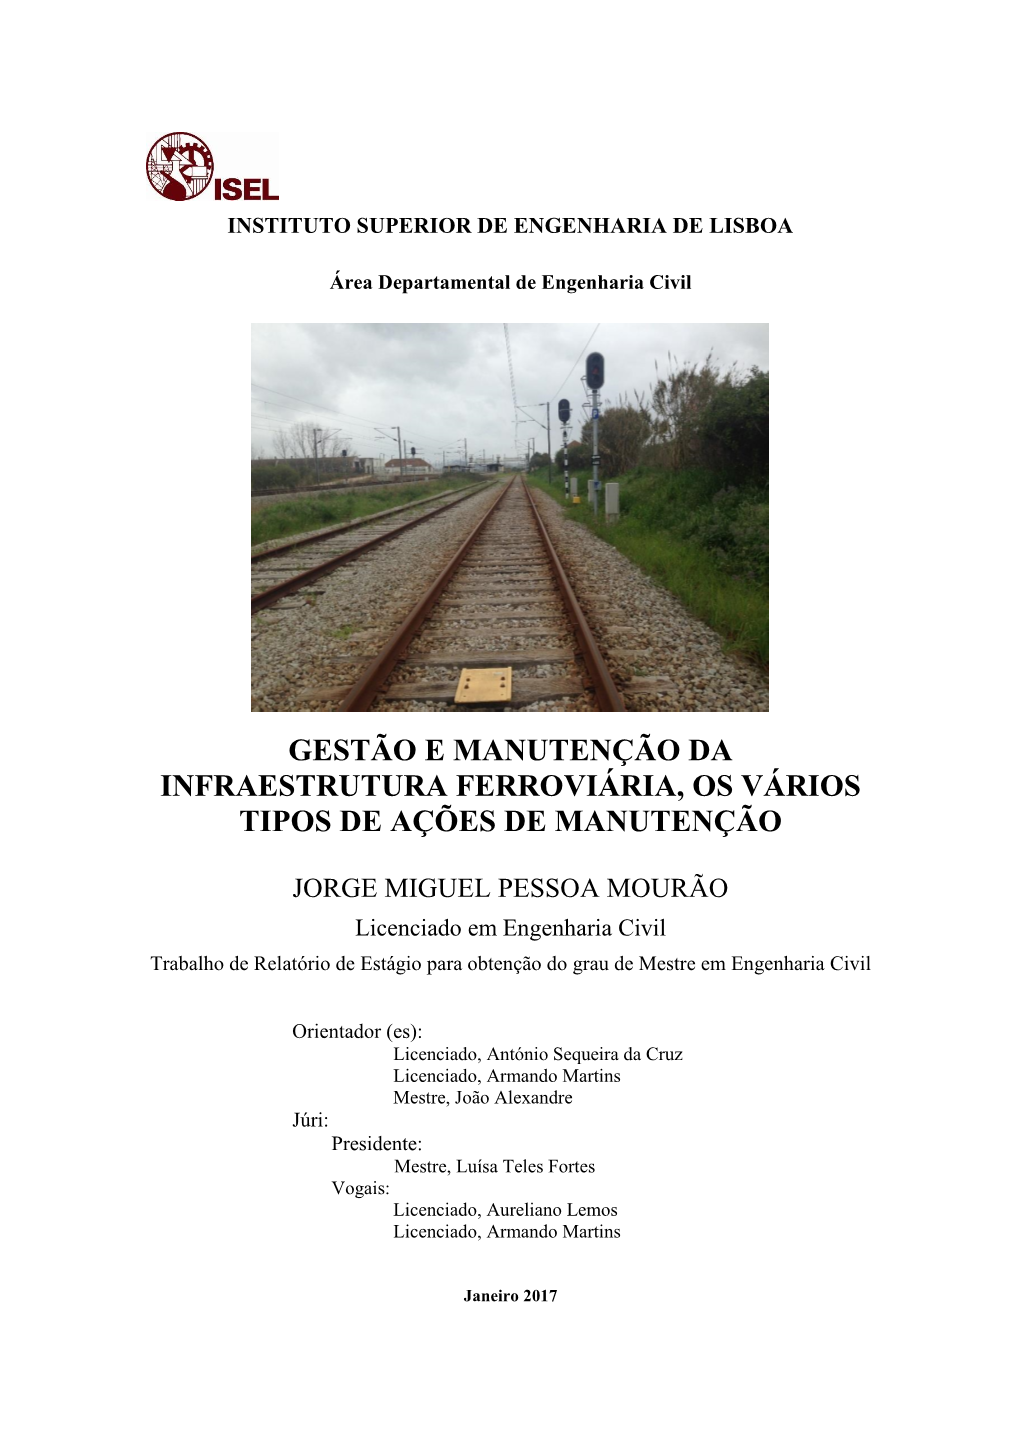 Gestão E Manutenção Da Infraestrutura Ferroviária, Os Vários Tipos De Ações De Manutenção